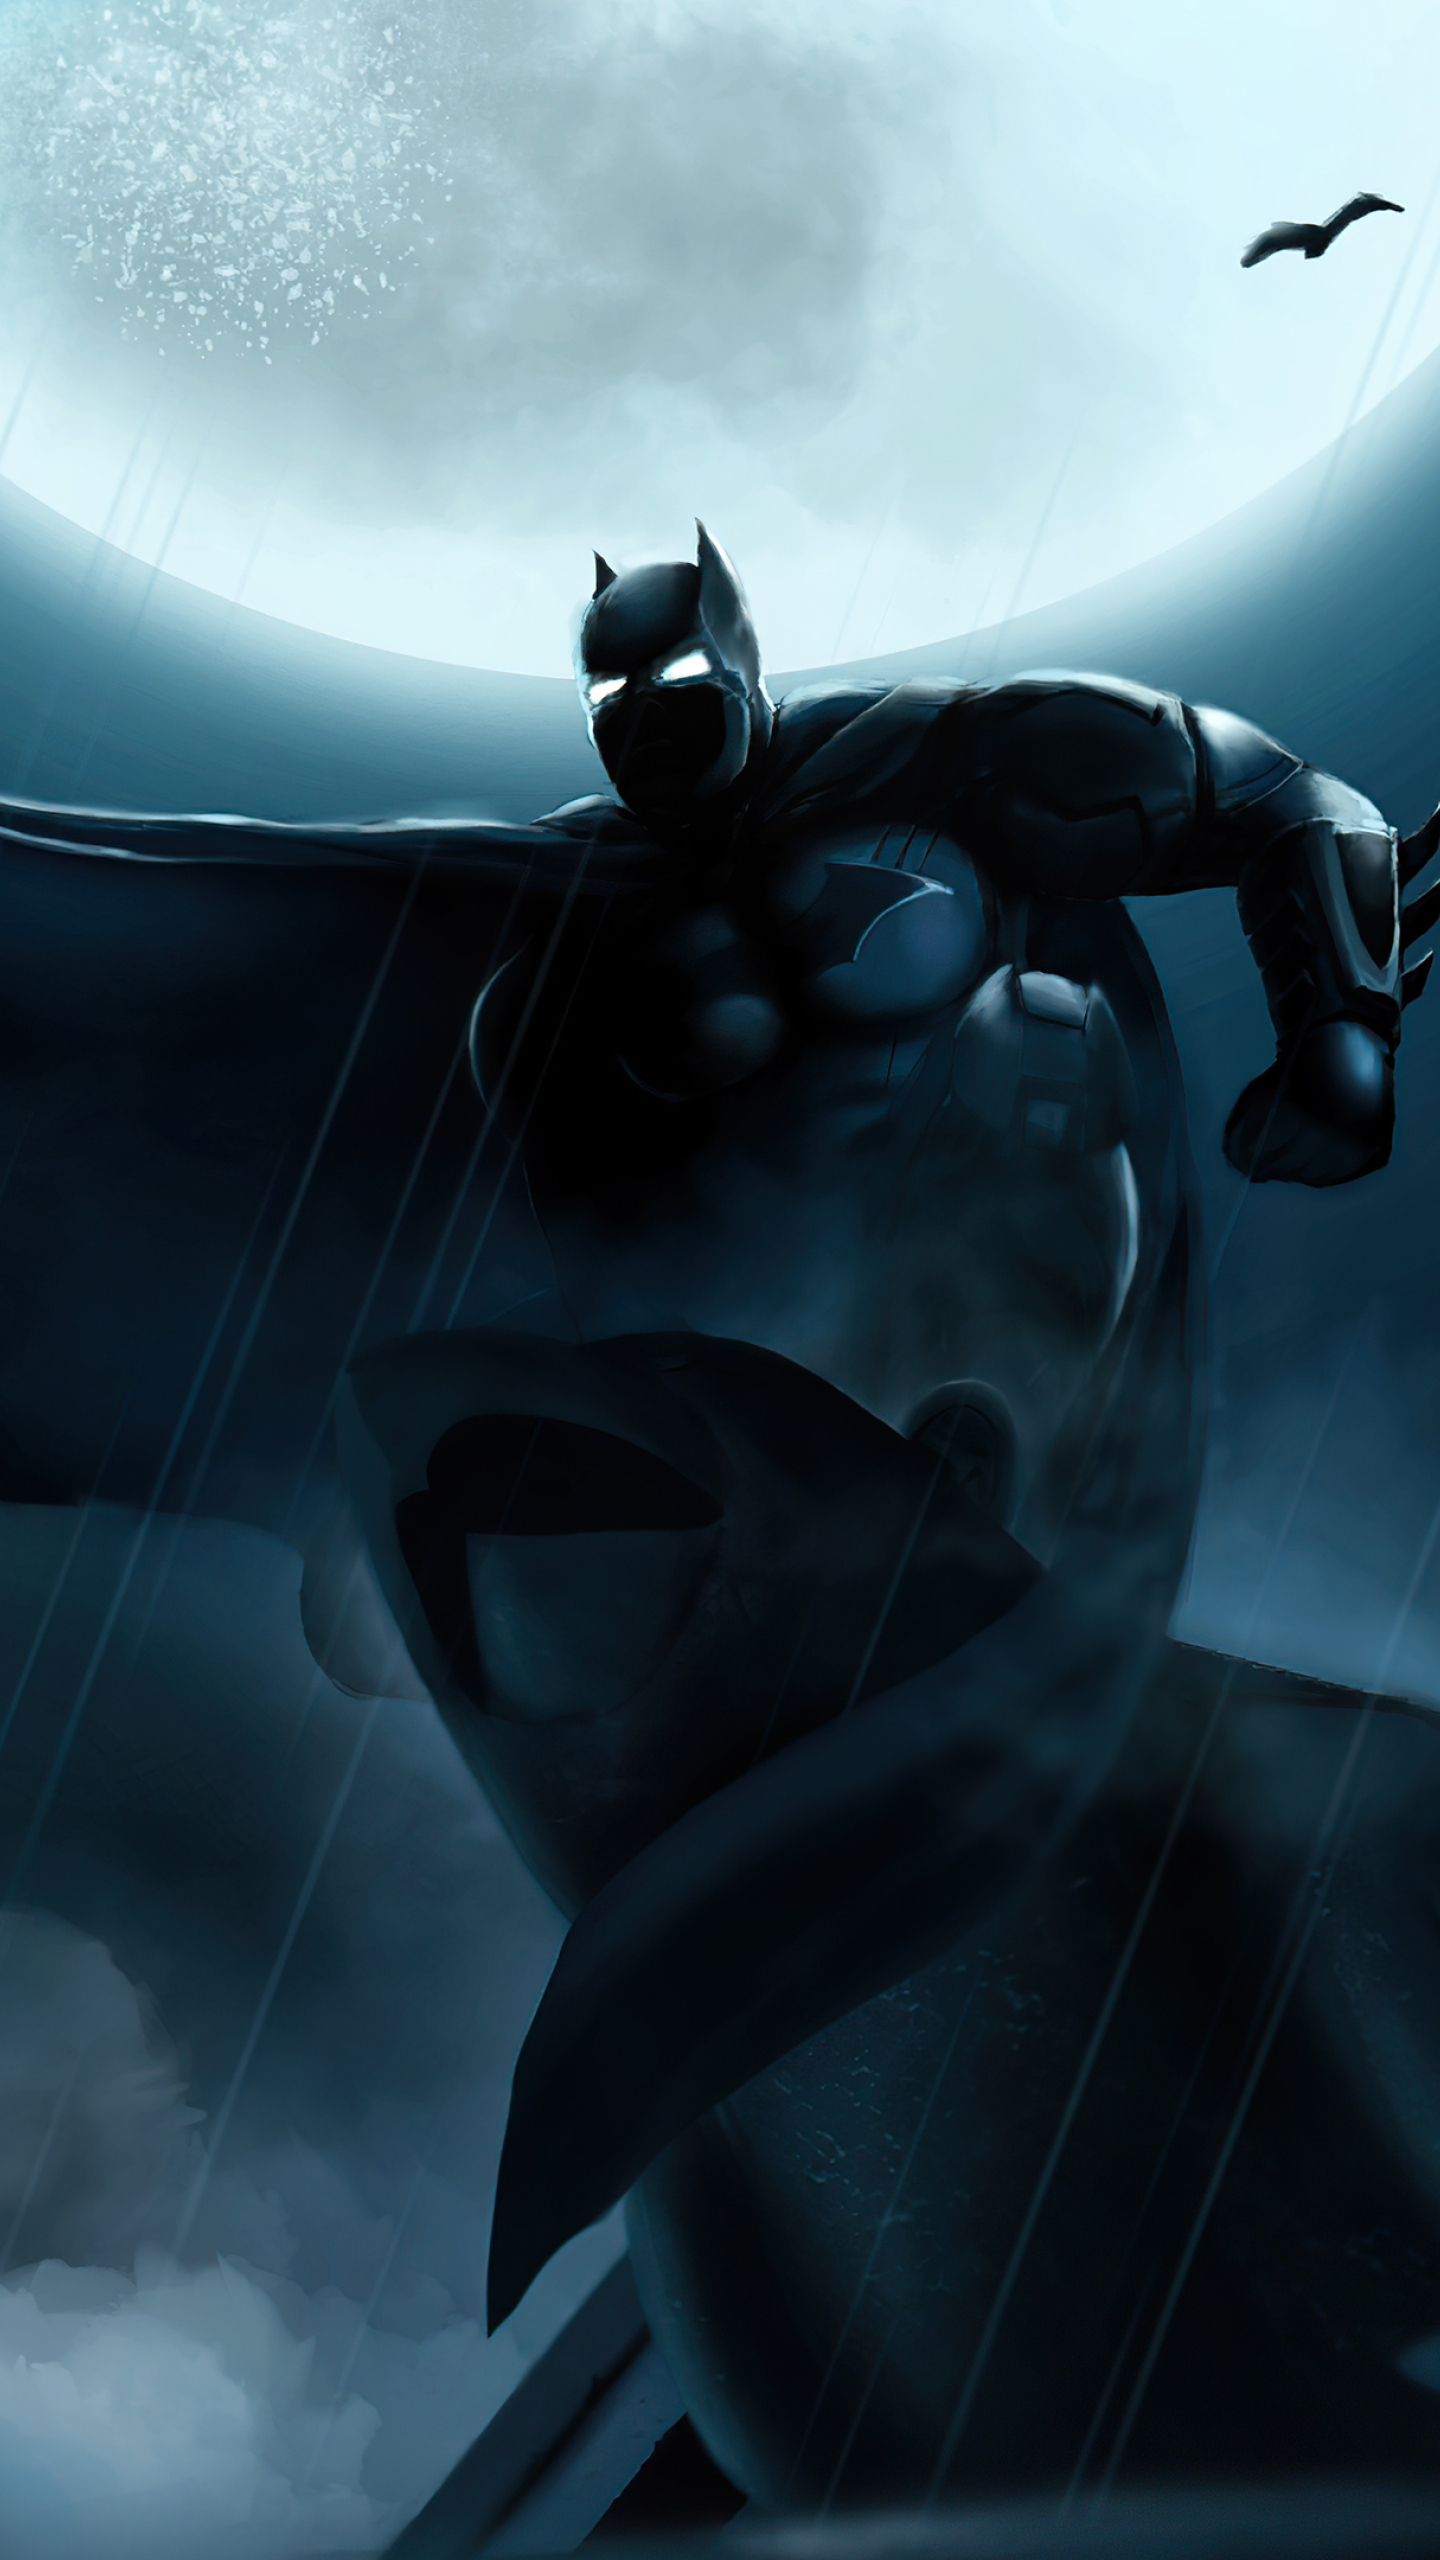 Batman Wallpaper 4K, AMOLED, DC Superheroes, DC Comics